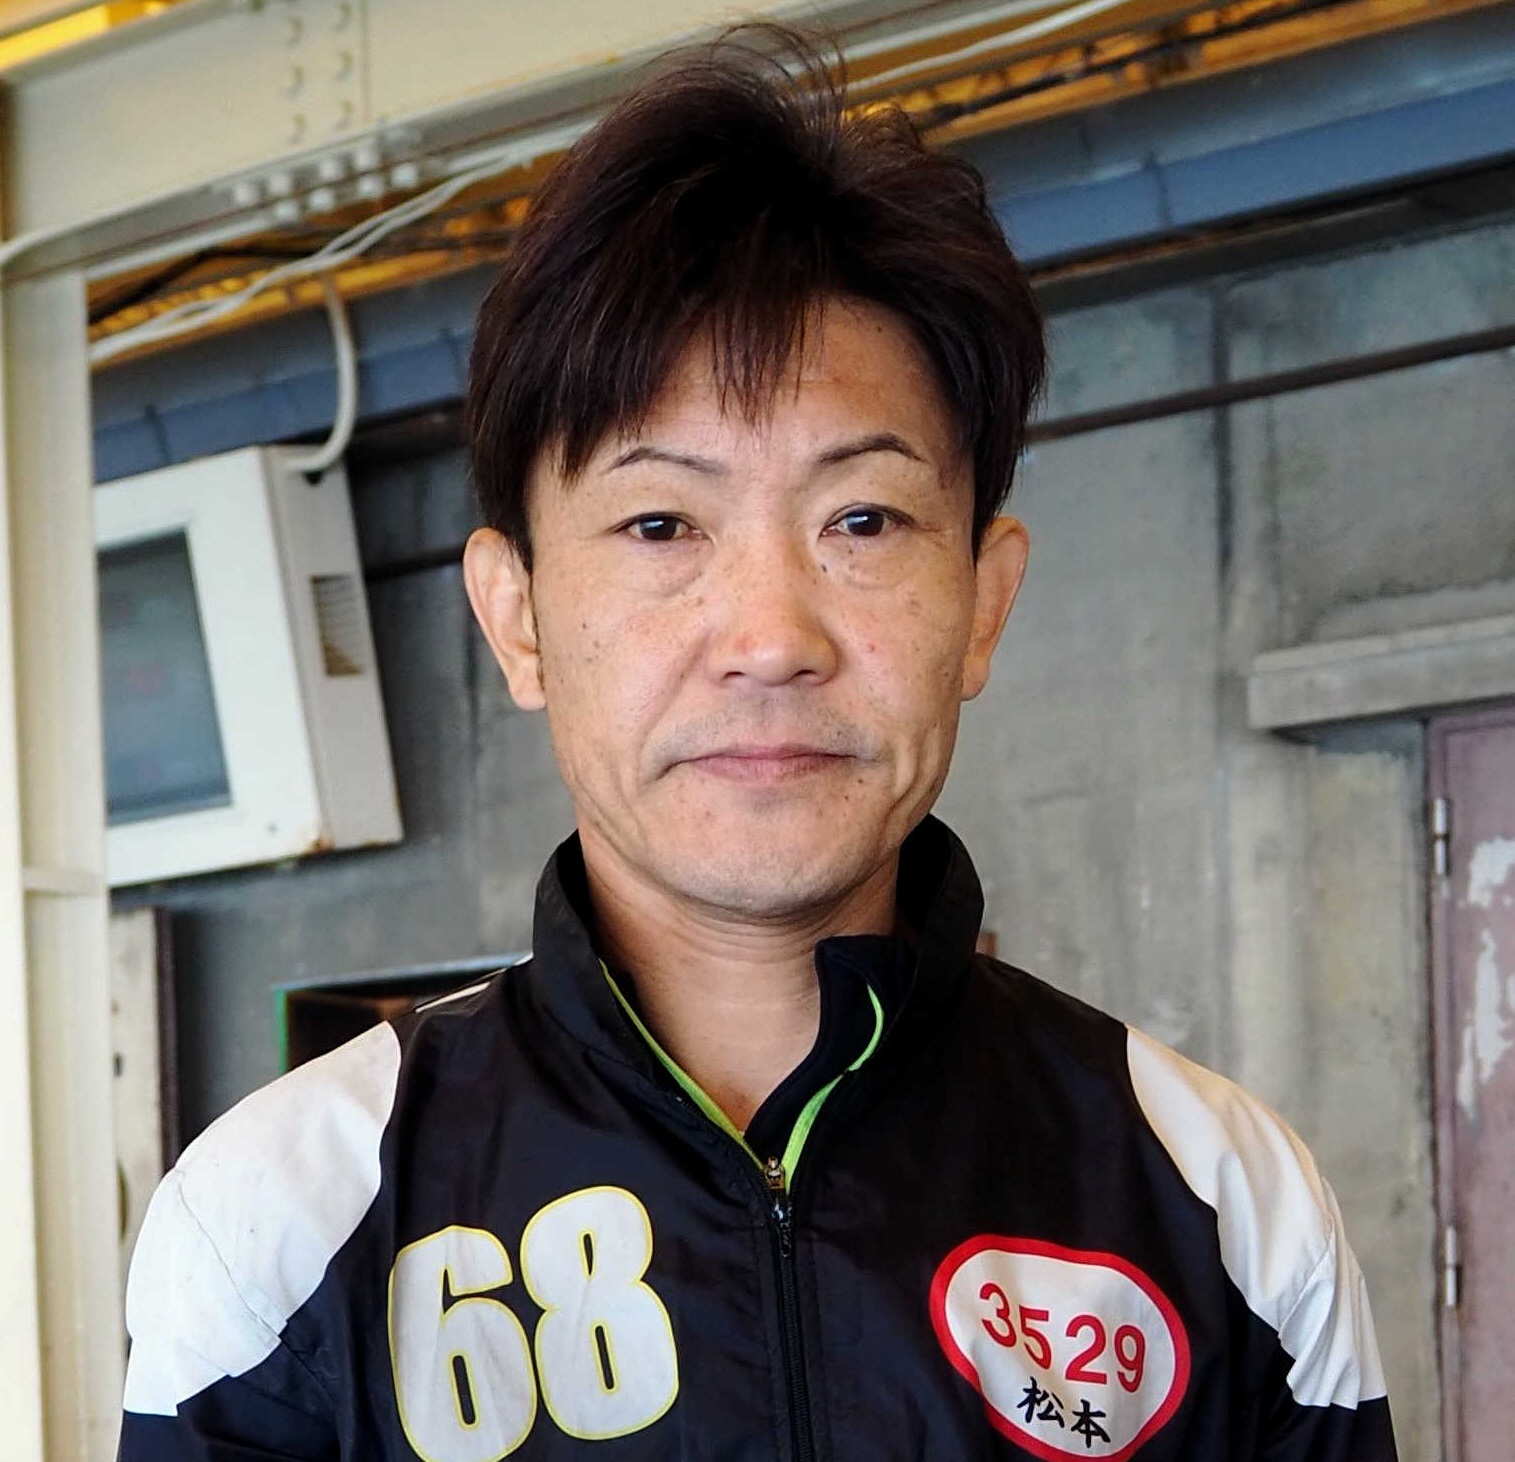 尼崎で地元の一流レーサー松本勝也がレース中事故で死亡 Boatre